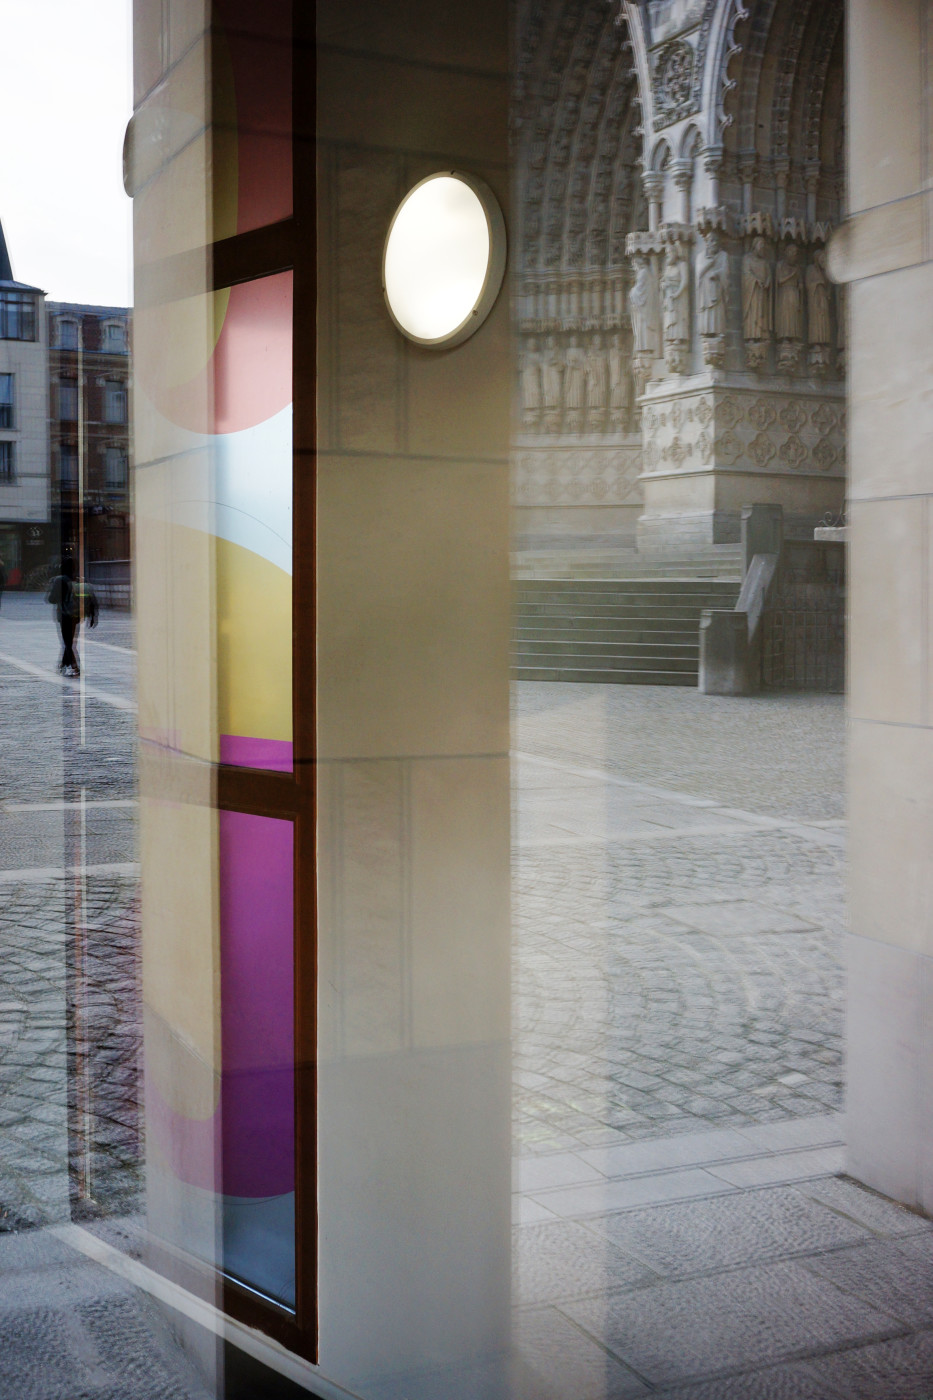 Amiens, entre modernité et Histoire. Double jeu de reflets avec en arrière plan la cathédrale d'Amiens.